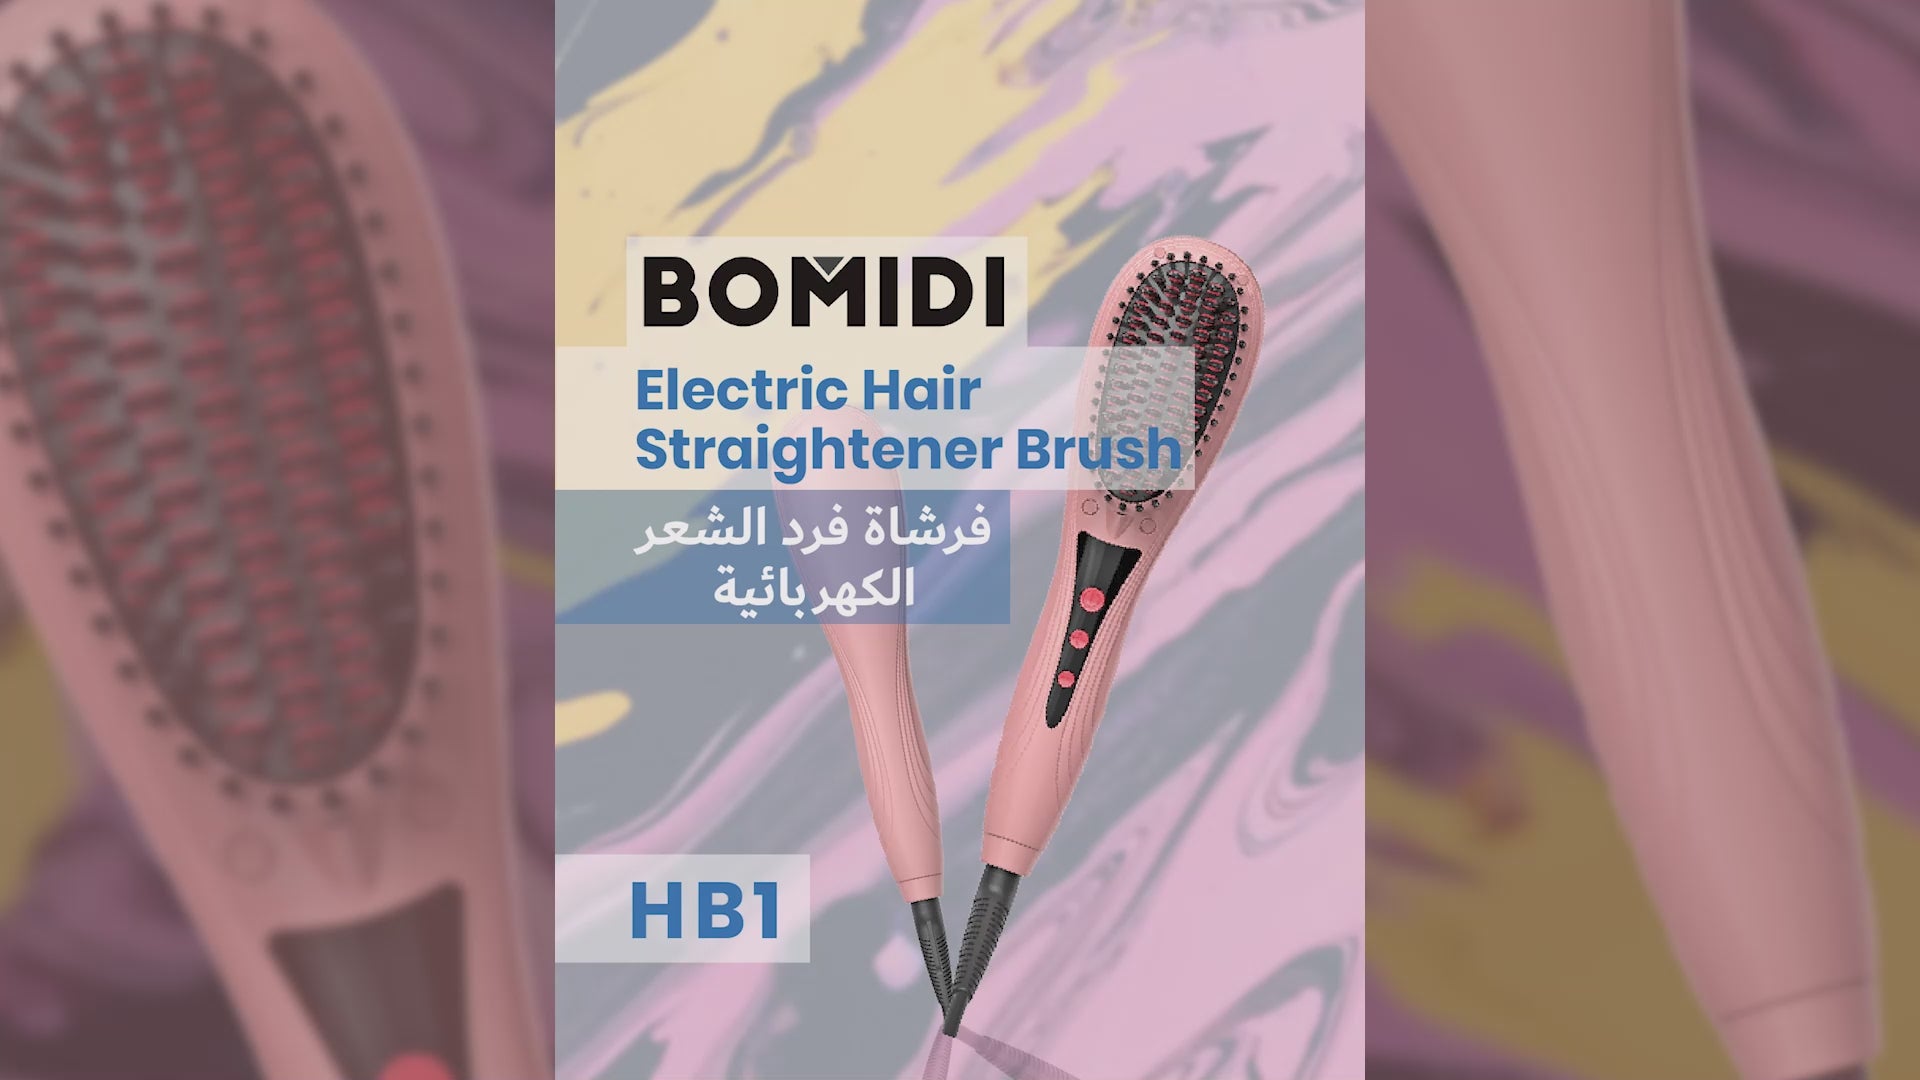 فرشاة تمليس الشعر الكهربائية من بوميدي HB1، مشط شعر متعدد الوظائف - وردي